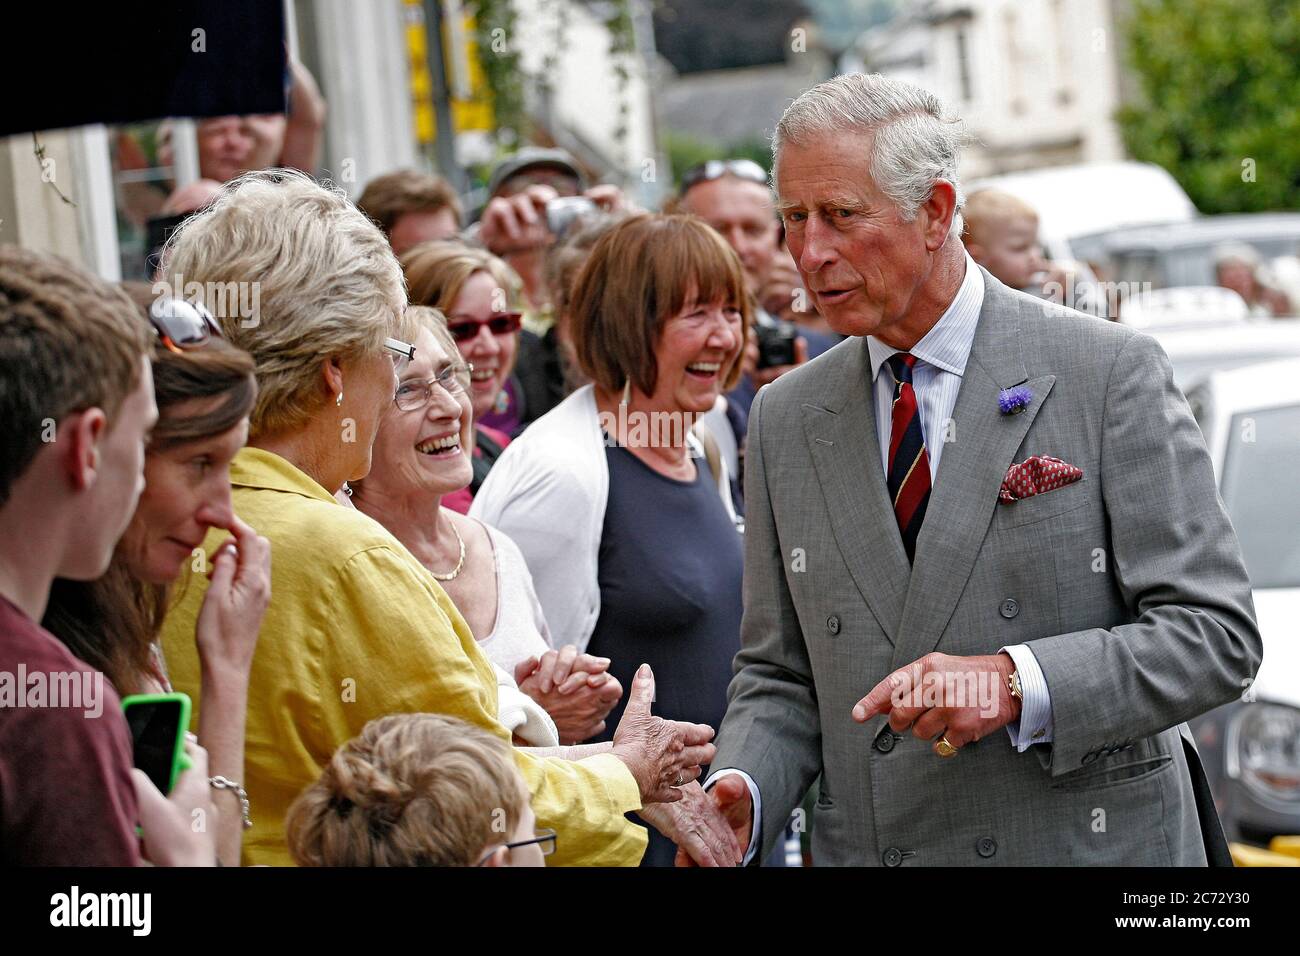 Prince Charles hace una parada rápida en Crickhowell Town, Powys, Gales, para hablar con multitudes de locales y comerciantes, el 3 de julio de 2014. ©PRWPhoto Foto de stock